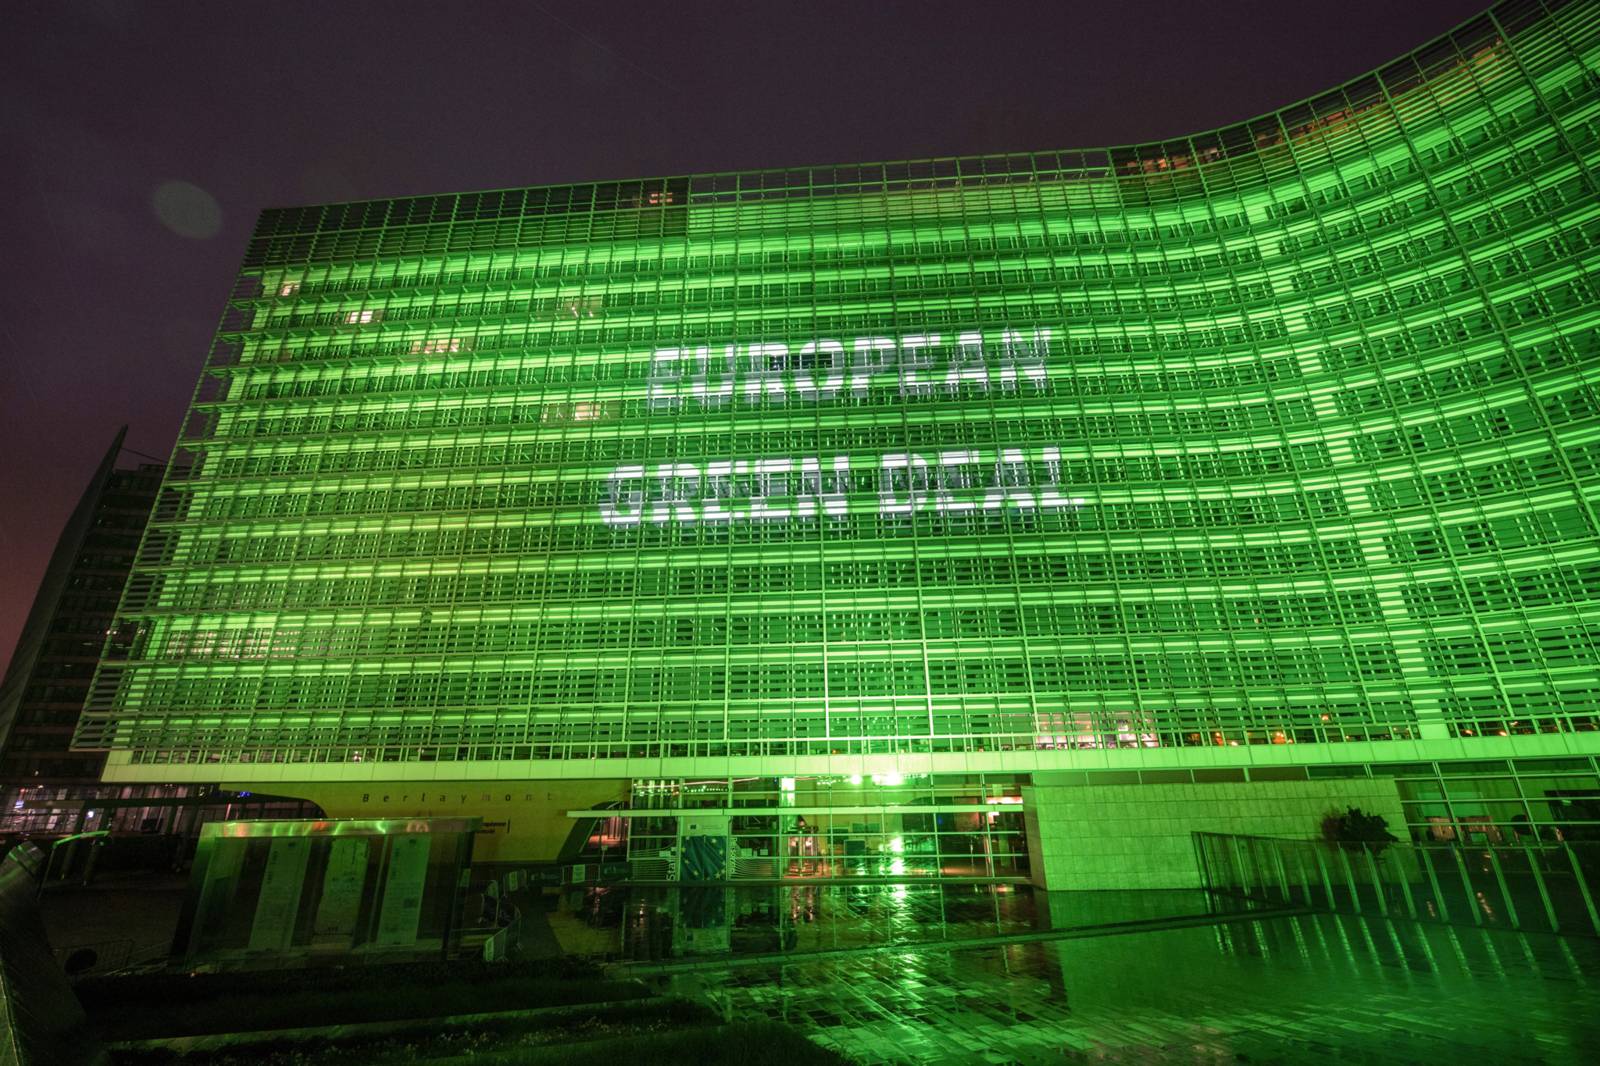 Das Berlaymont Gebäude leuchtet anlässlich des europäischen Green Deals grün.